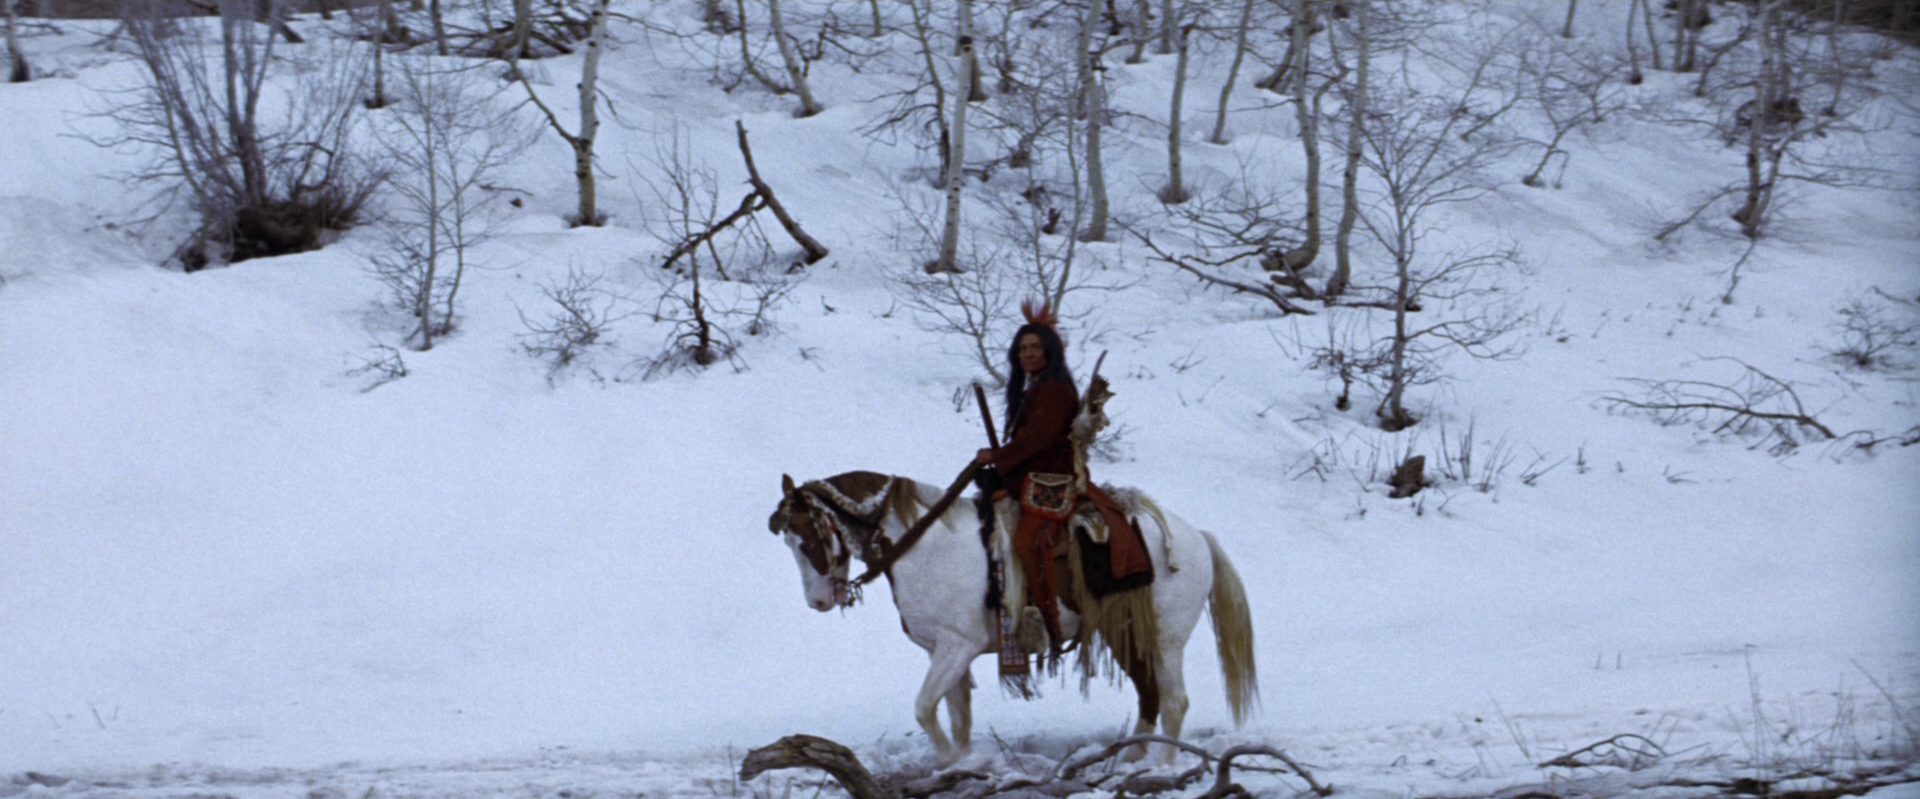 Indianer zu Pferd in unwirtlicher Schneelandschaft.